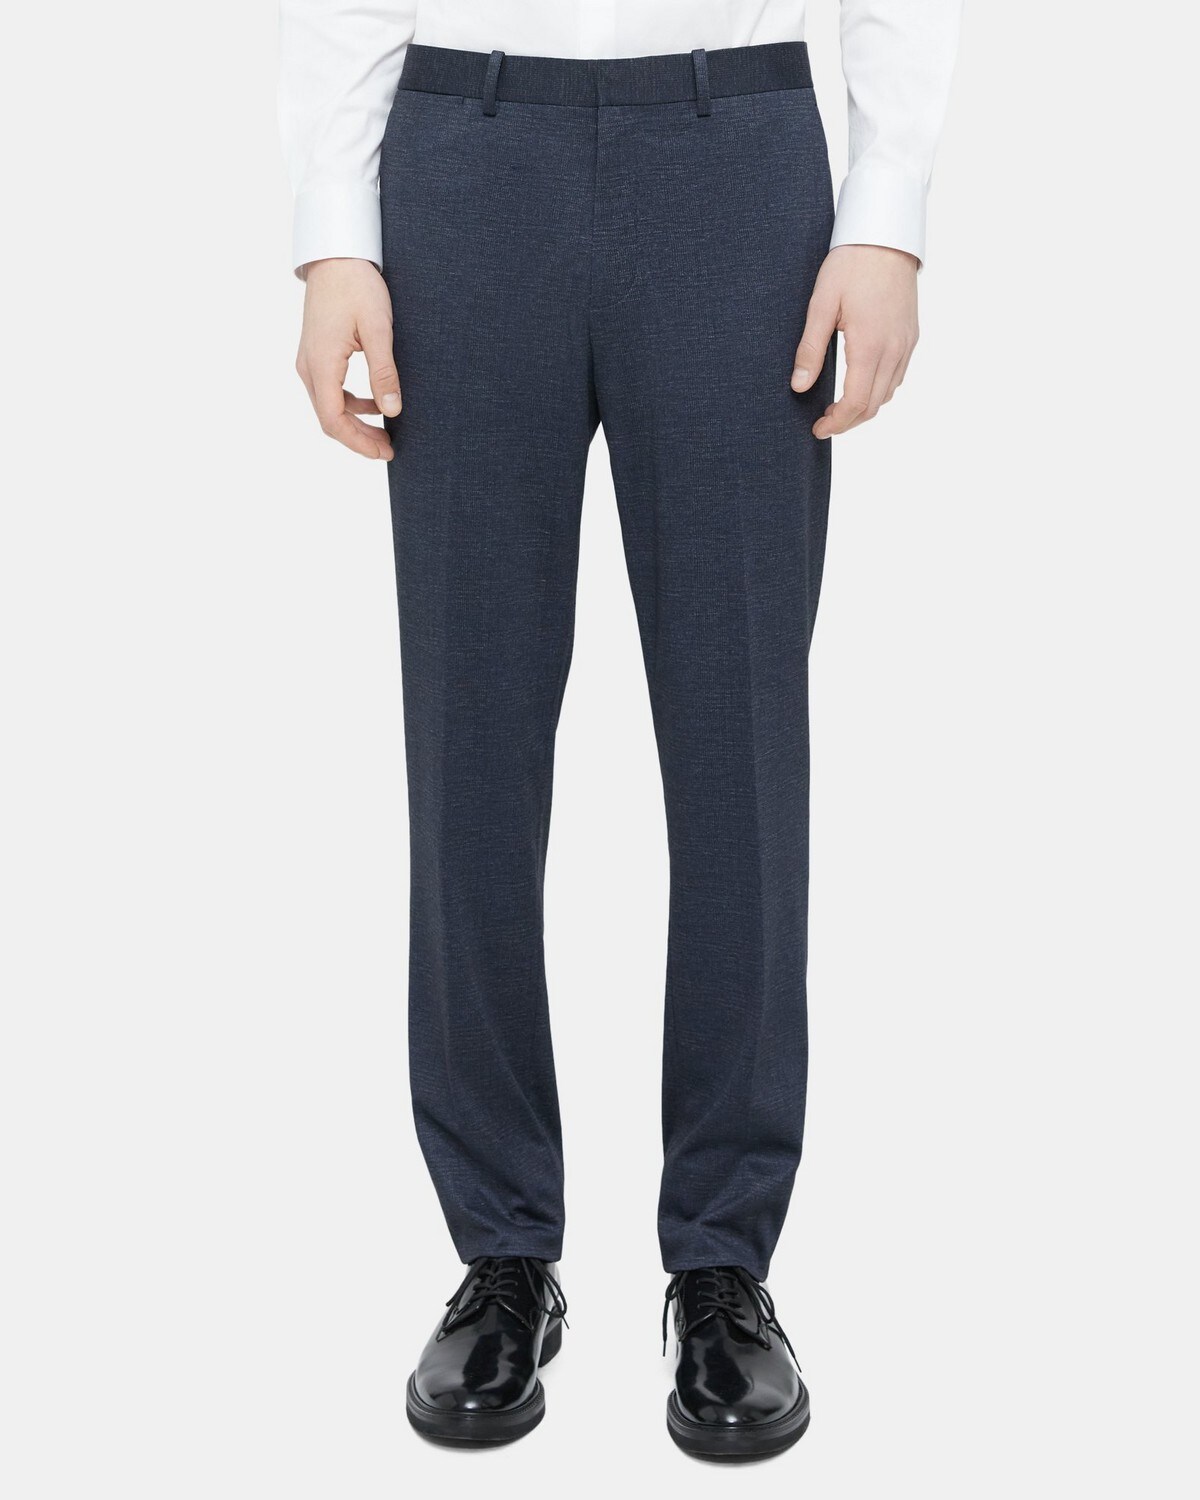 Slim-Fit Suit Pant in Plaid Knit